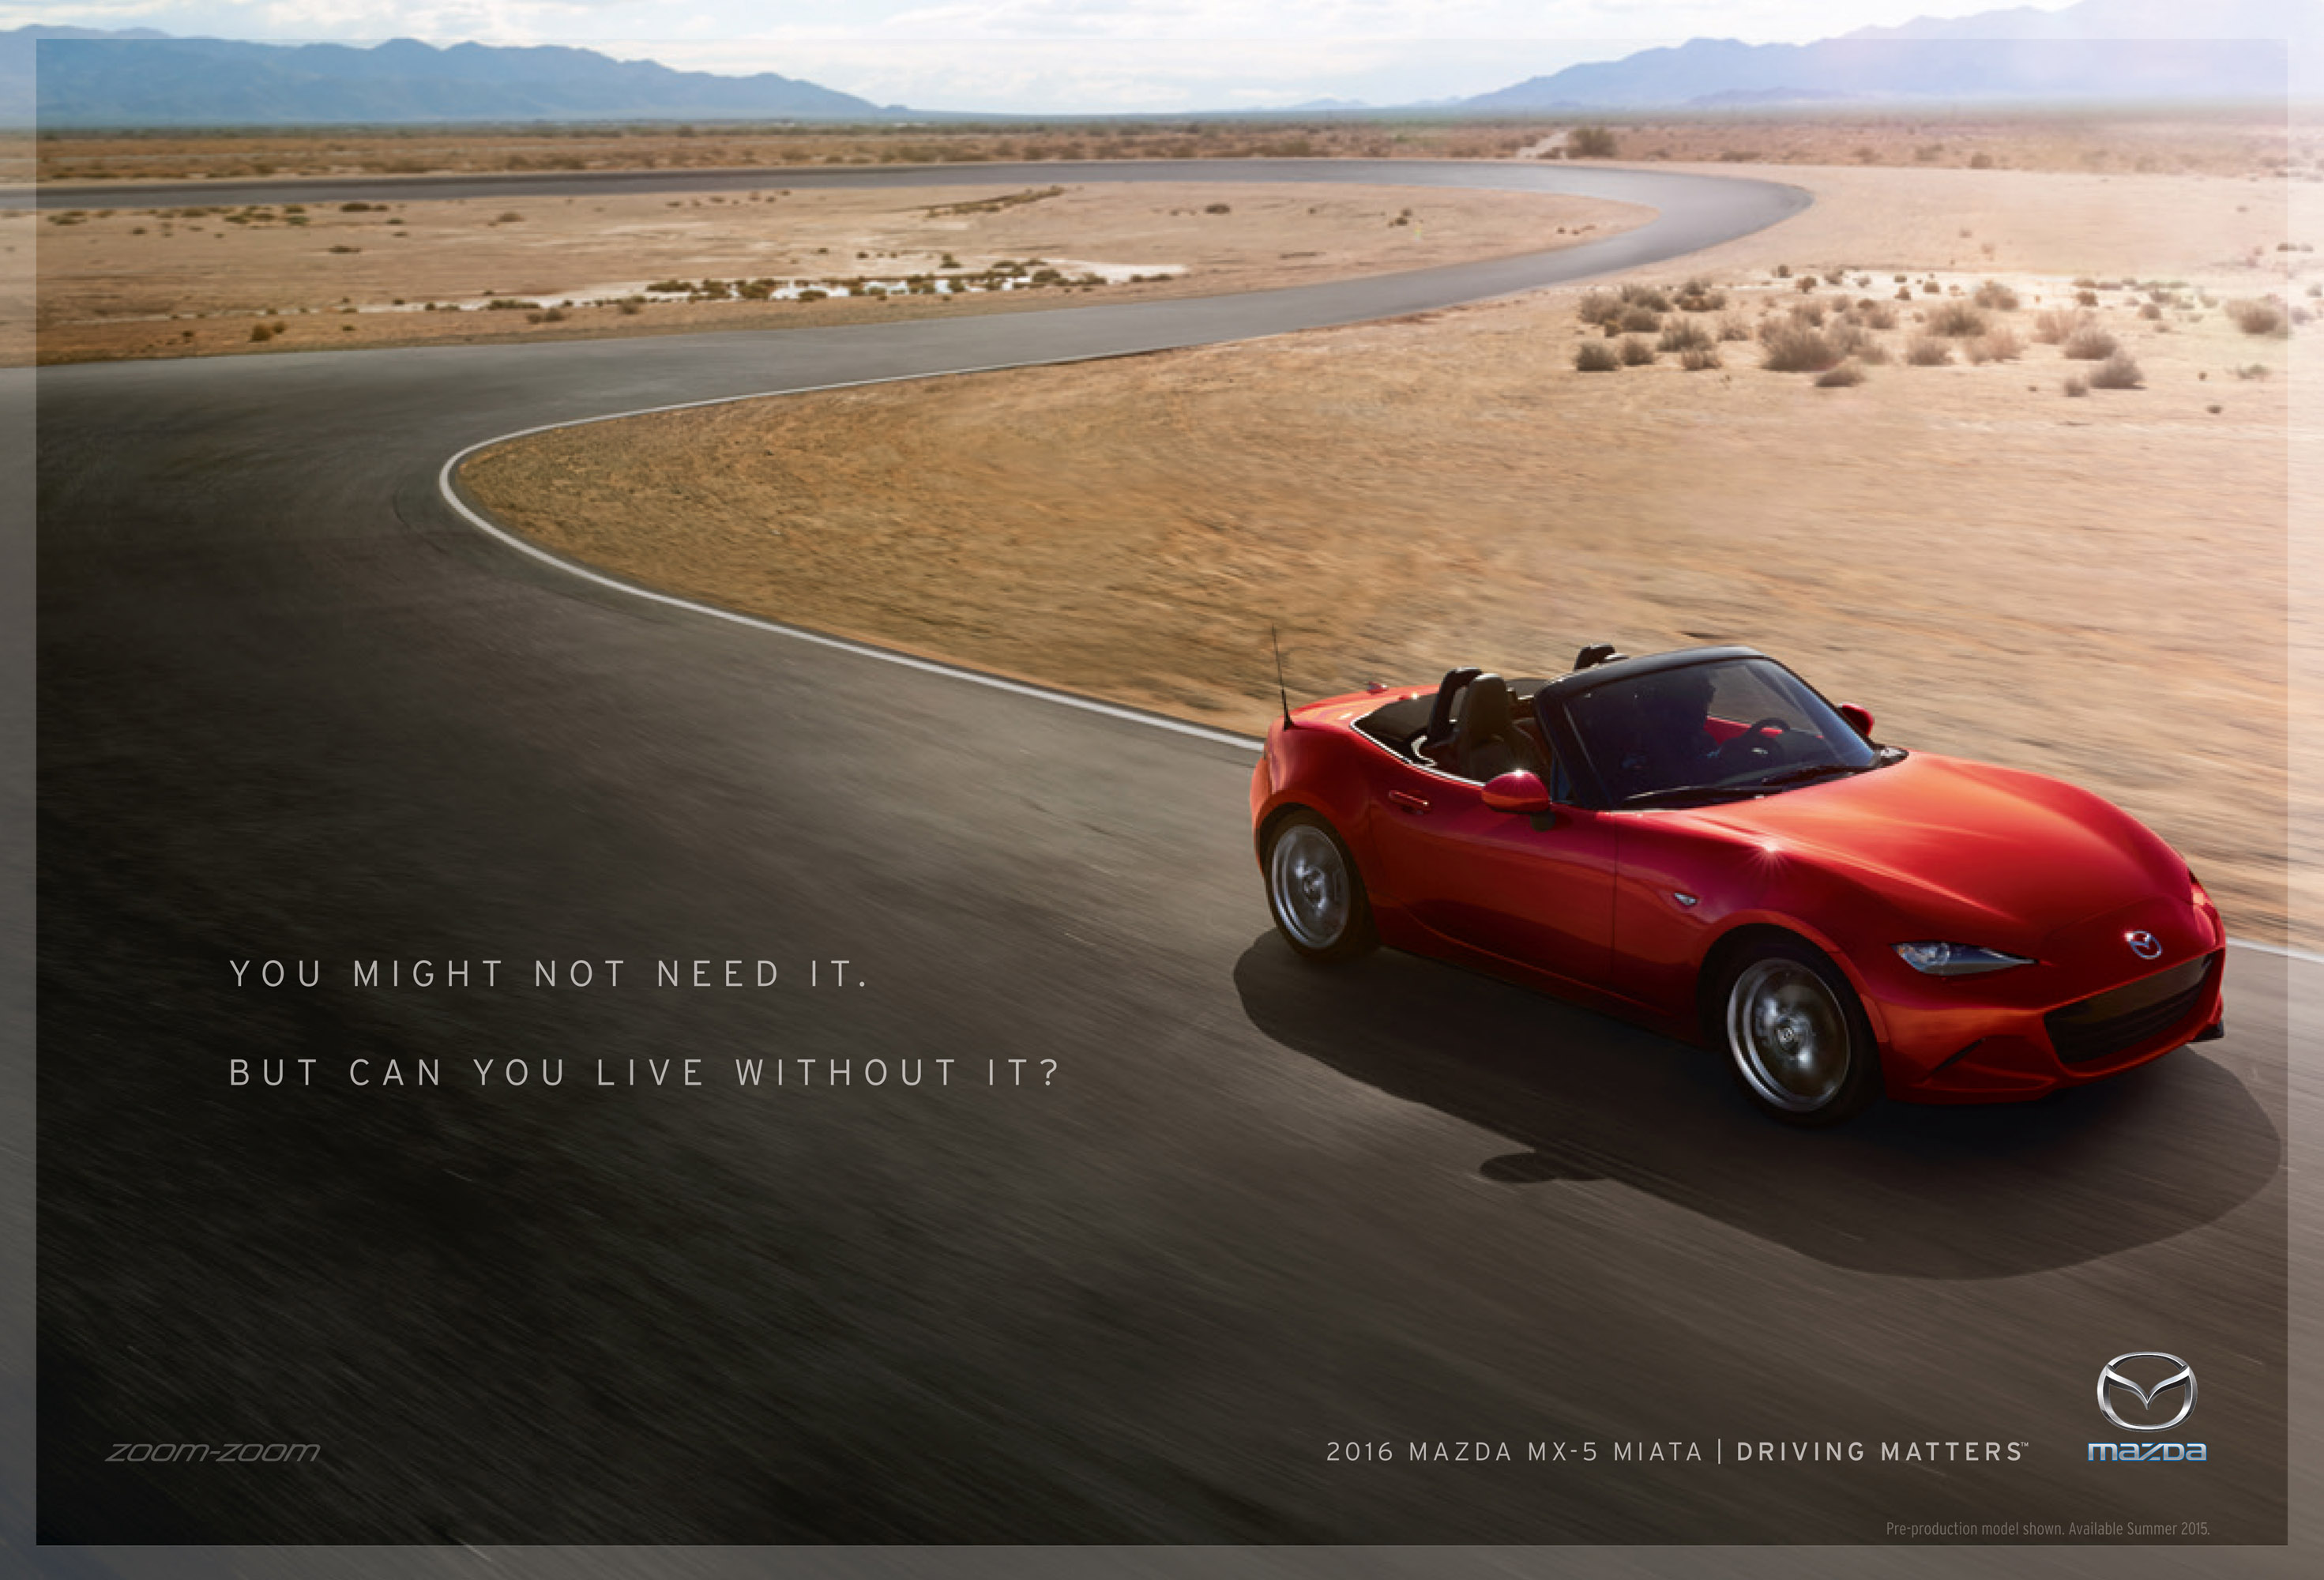 Mazda Drive Matters Campaign